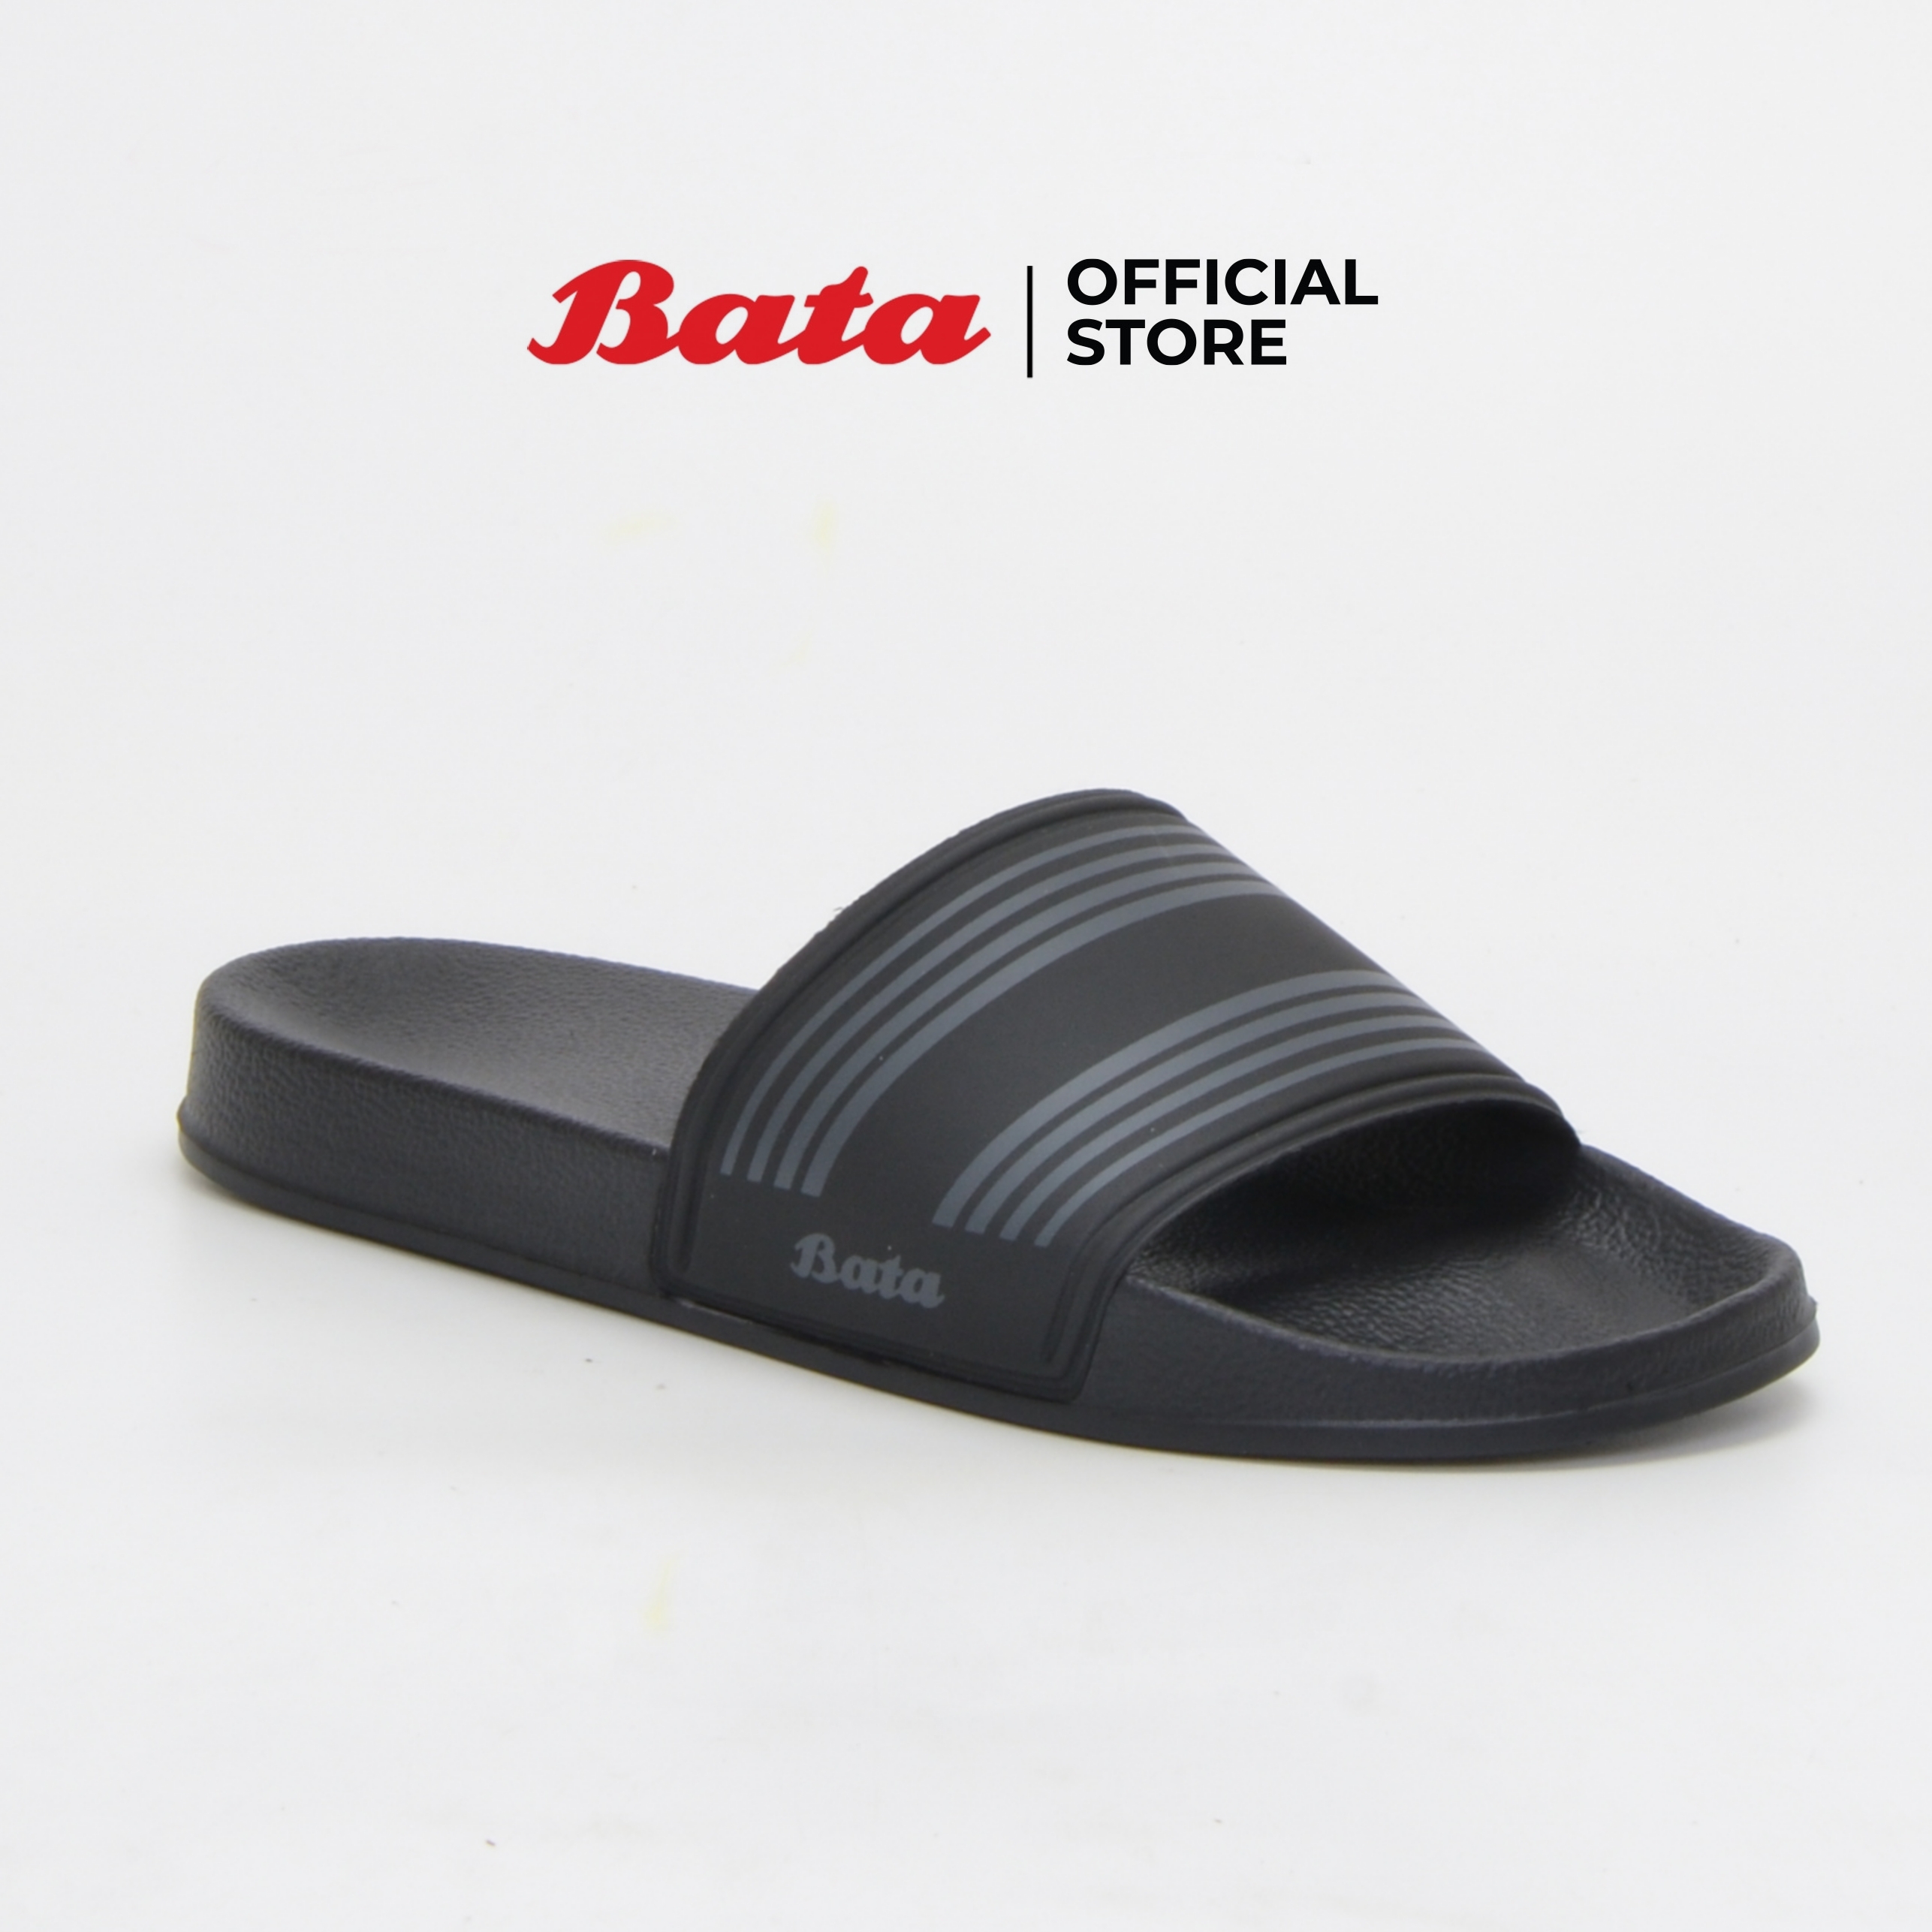 Bata Men's Mules Sandals รองเท้าแตะสำหรับผู้ชาย รุ่น Simba สีดำ 8616353